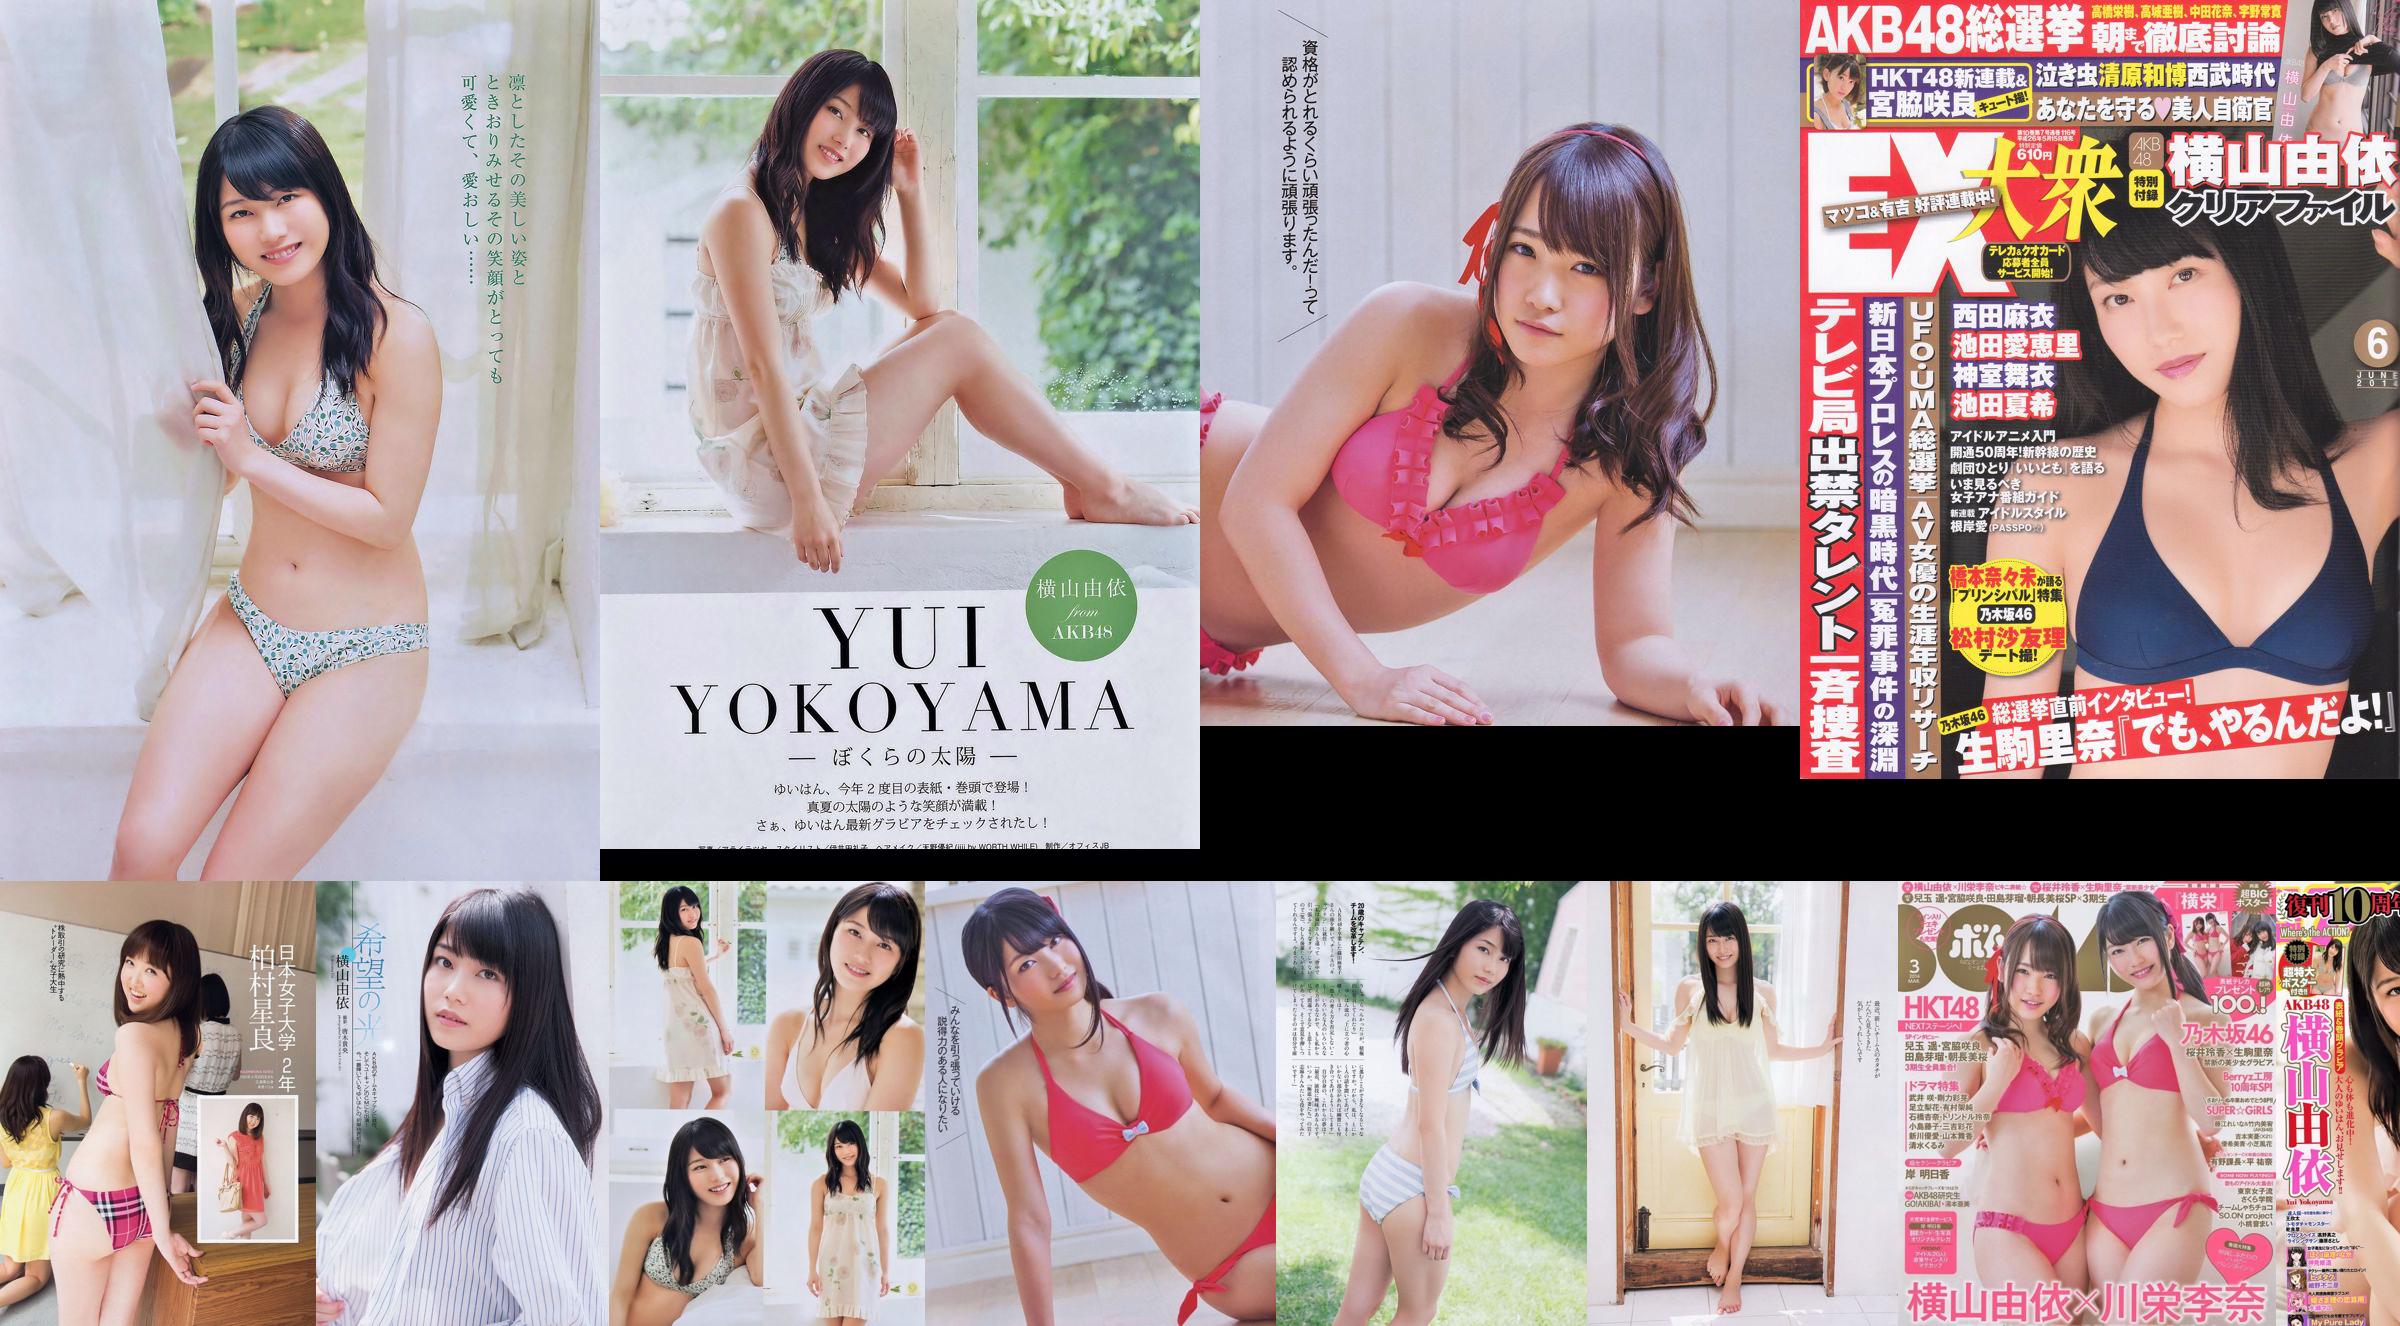 Yui Yokoyama Nozomi Sasaki Rina Koike Asuka Kuramochi Miwako Kakei Risa Yoshiki Ruri Shinato [Weekly Playboy] 2013 No.38 ภาพถ่าย No.2b6865 หน้า 1